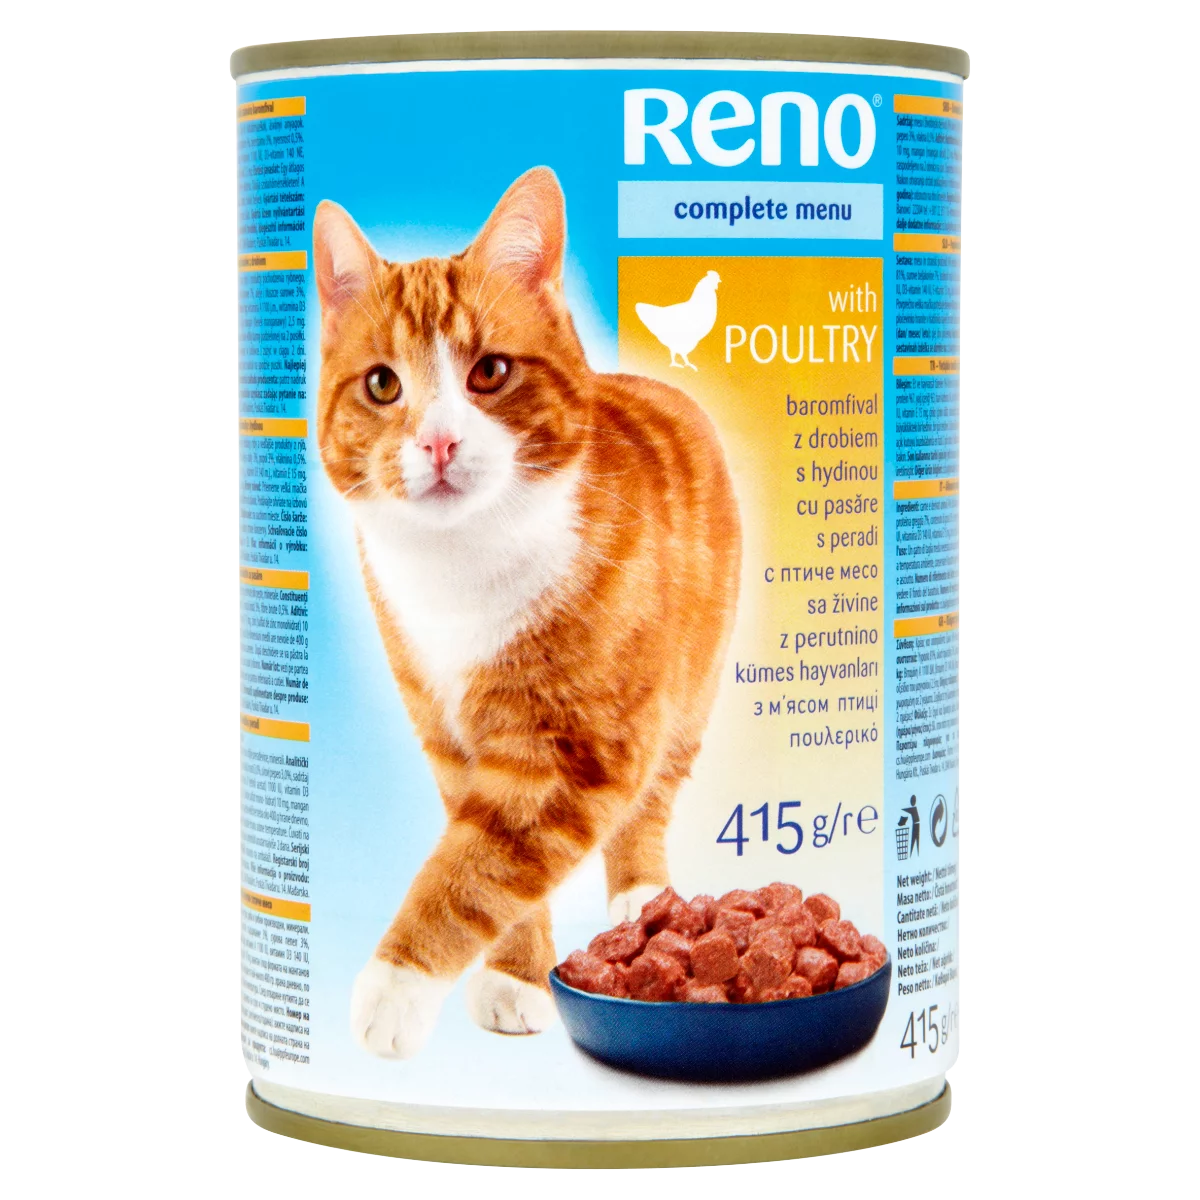 Reno Konzerv teljes értékű állateledel felnőtt macskák számára baromfival 415 g